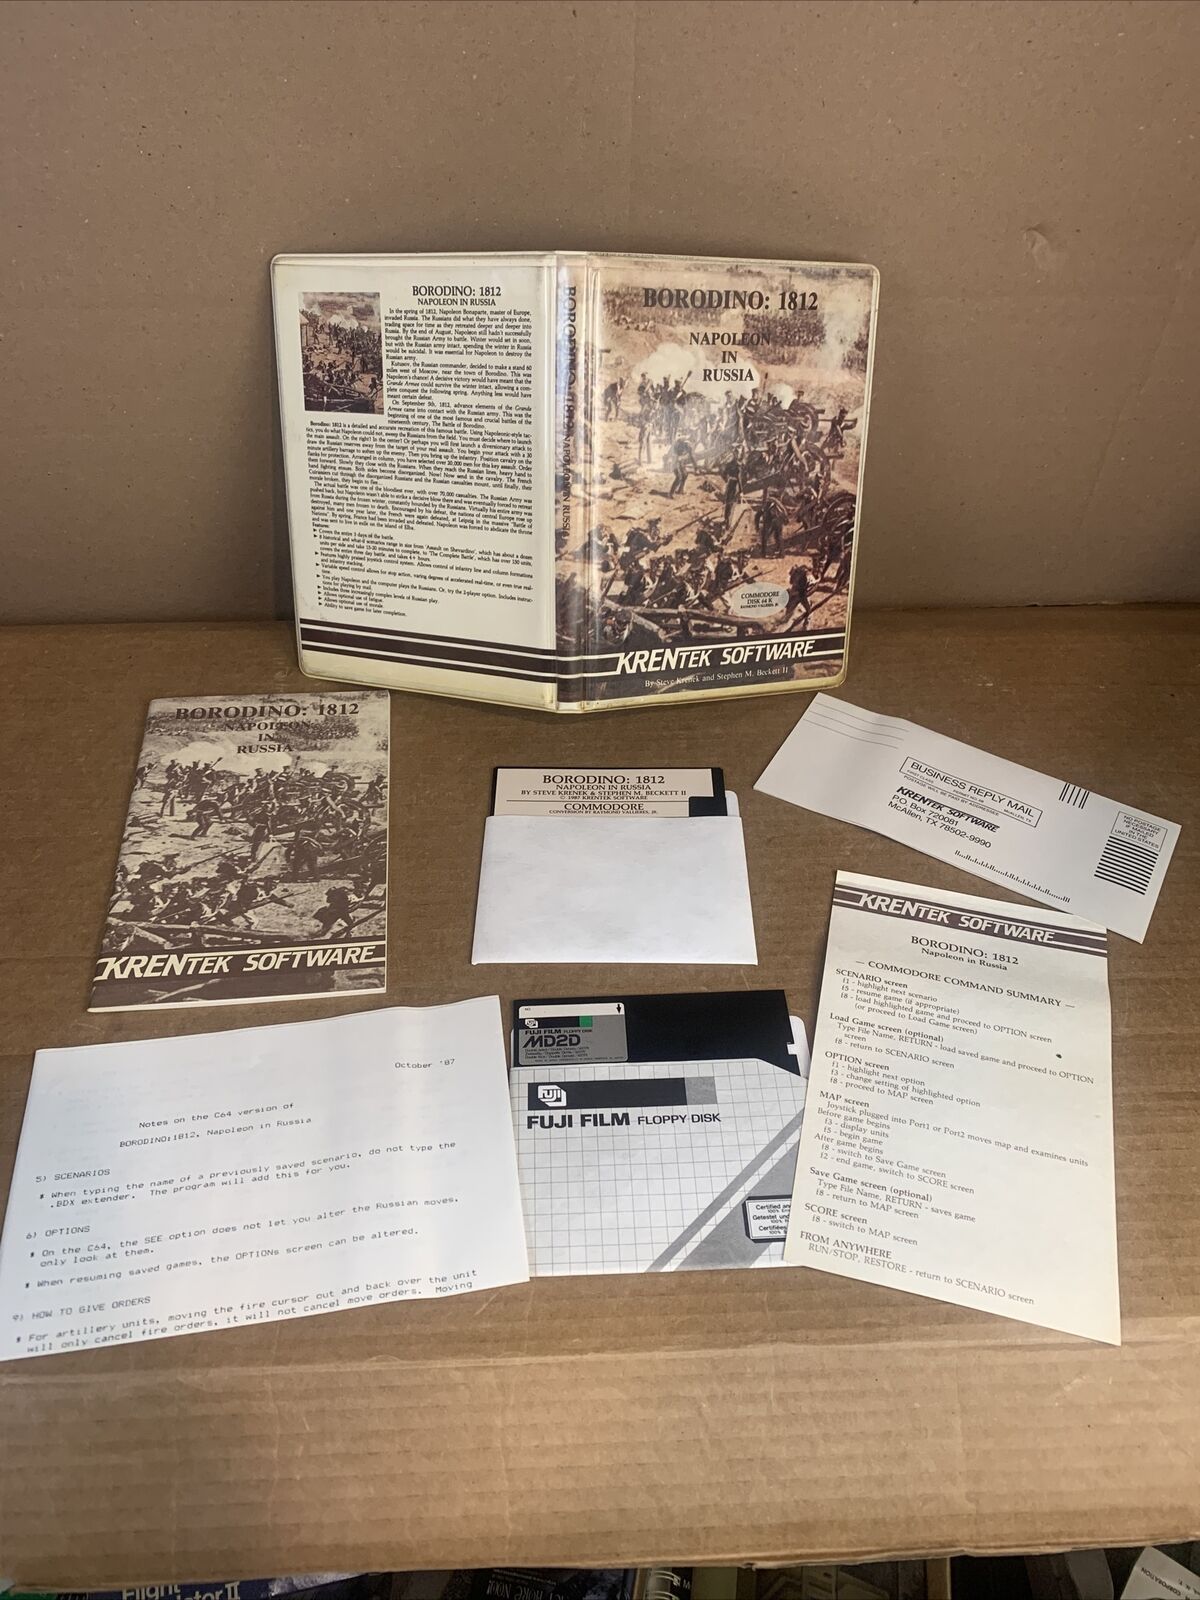 Krentek Software Borodino 1812 Napoleon in Russia Commodore 64￼ Big Box War Game